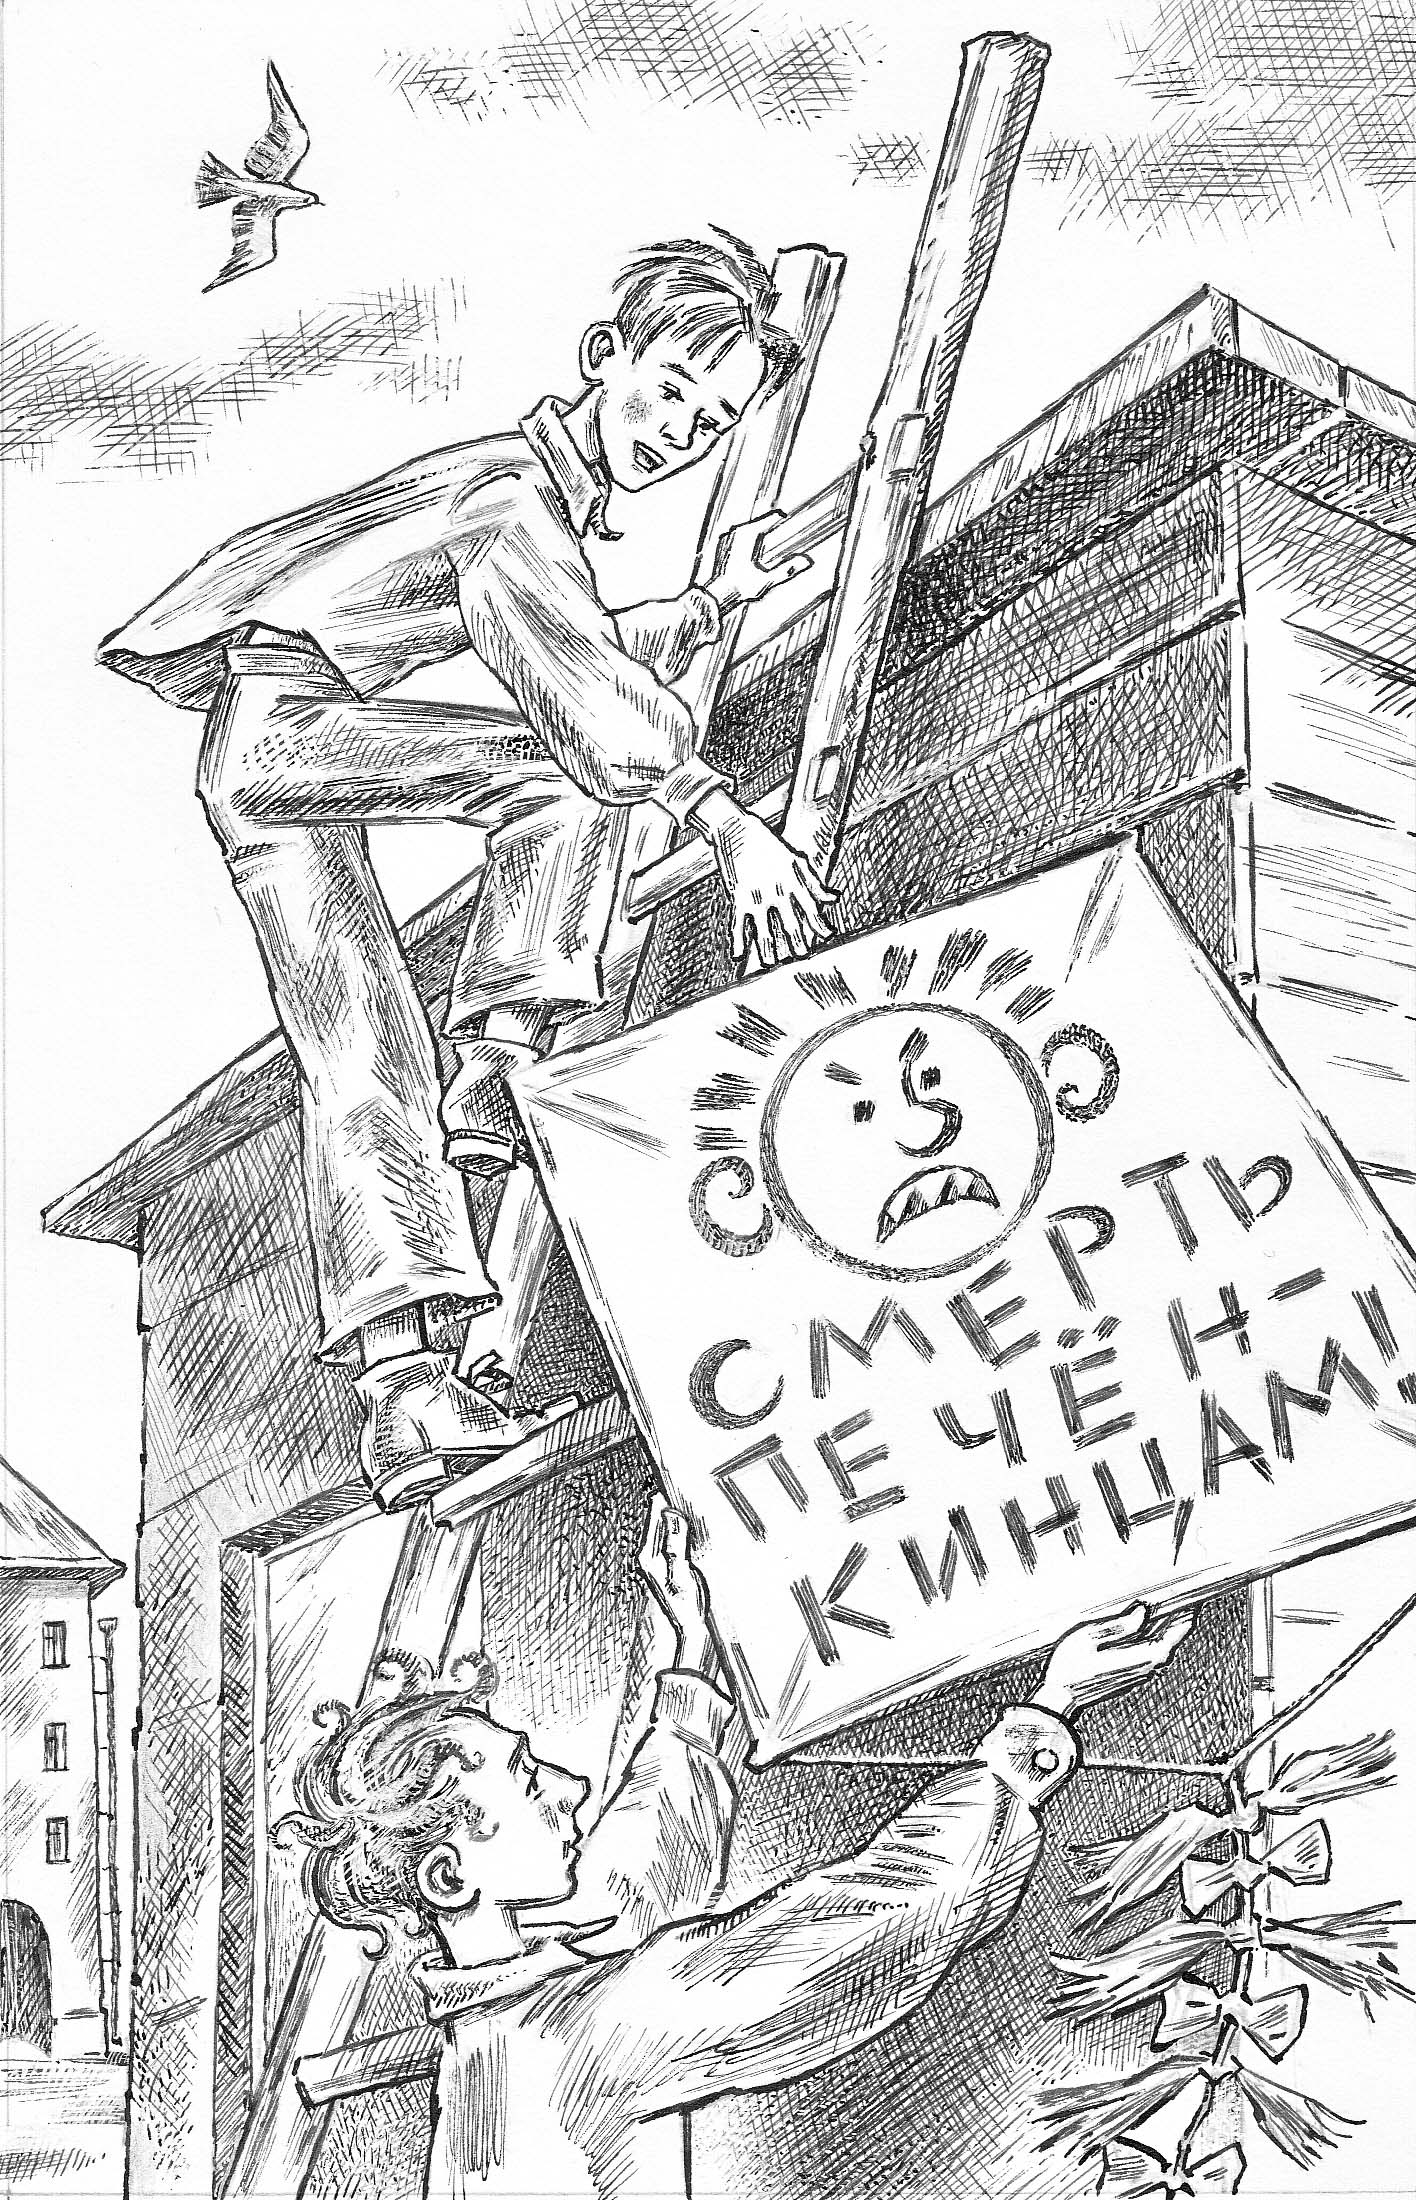 Чуковский серебряный герб краткое содержание